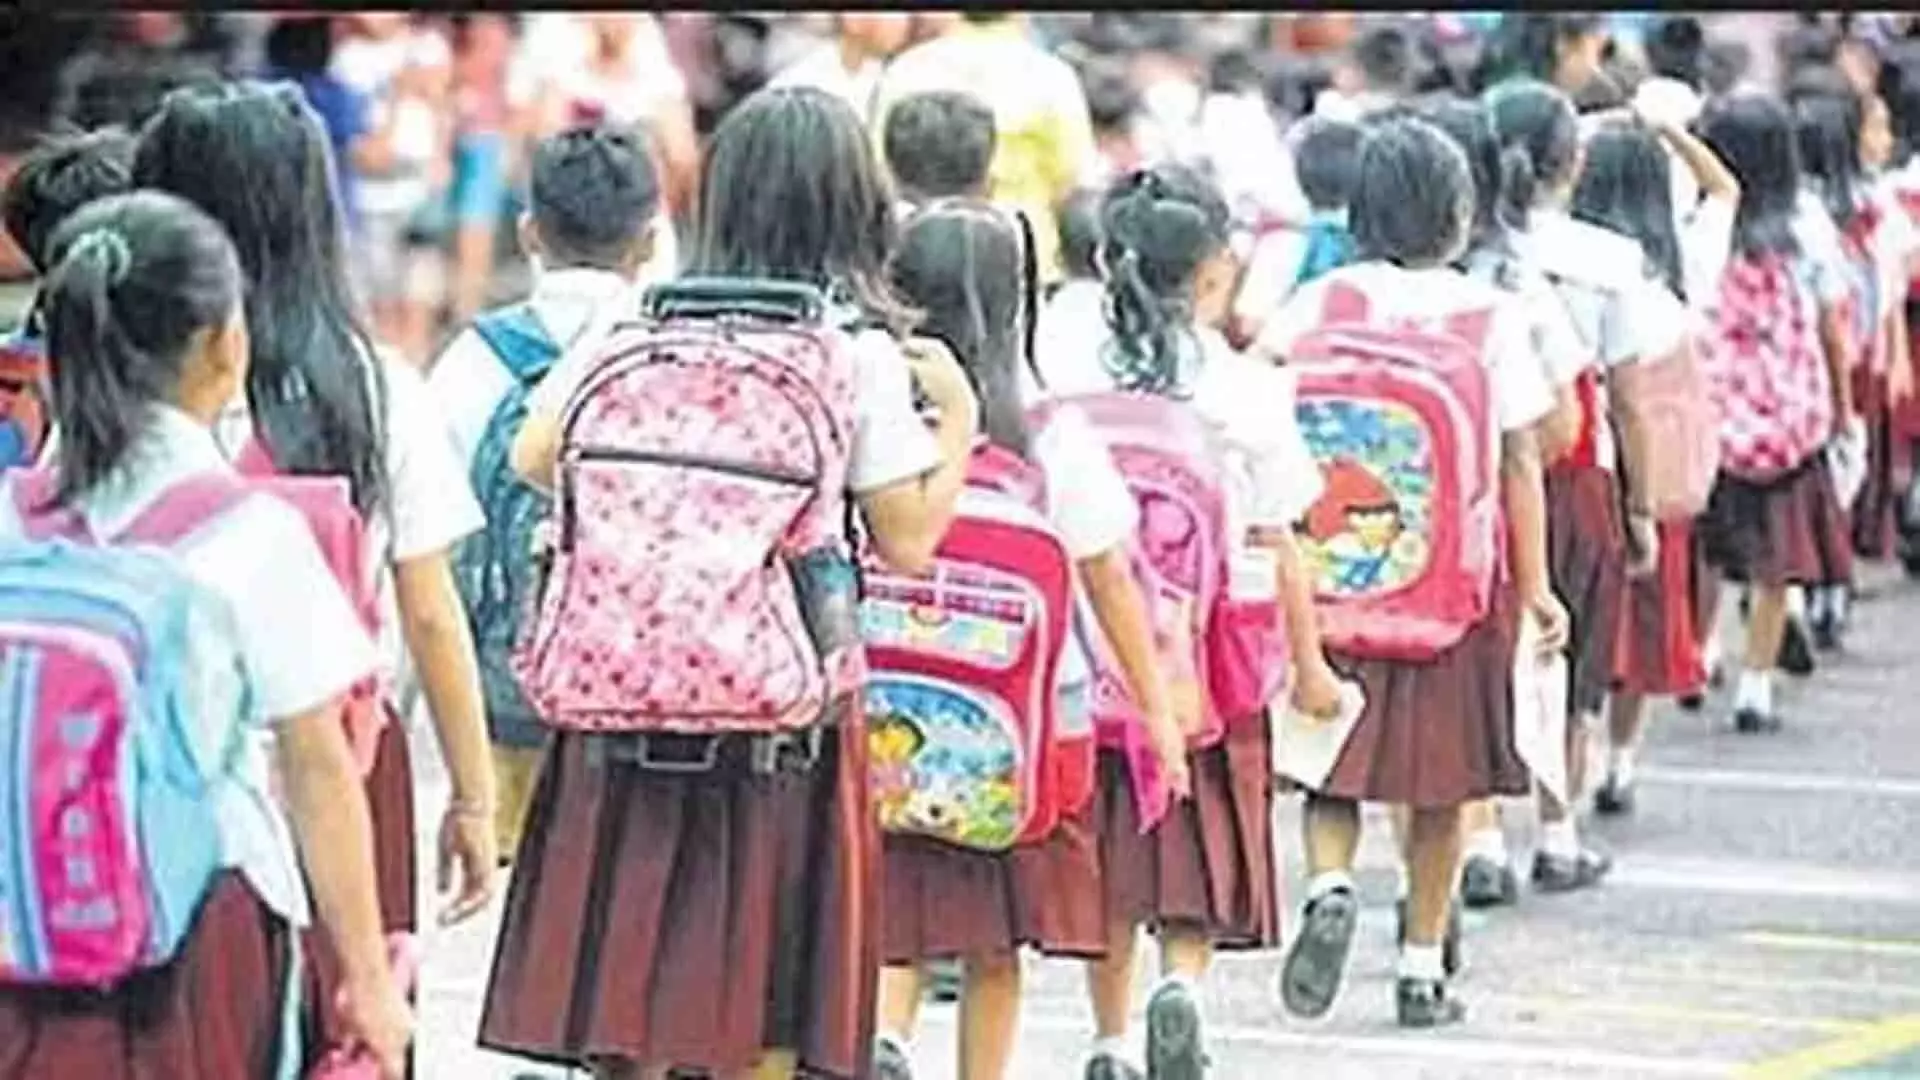 महाराष्ट्र बाल अधिकार आयोग ने निजी स्कूलों के लिए अल्पसंख्यक दर्जा नीति में सुधार का आग्रह किया